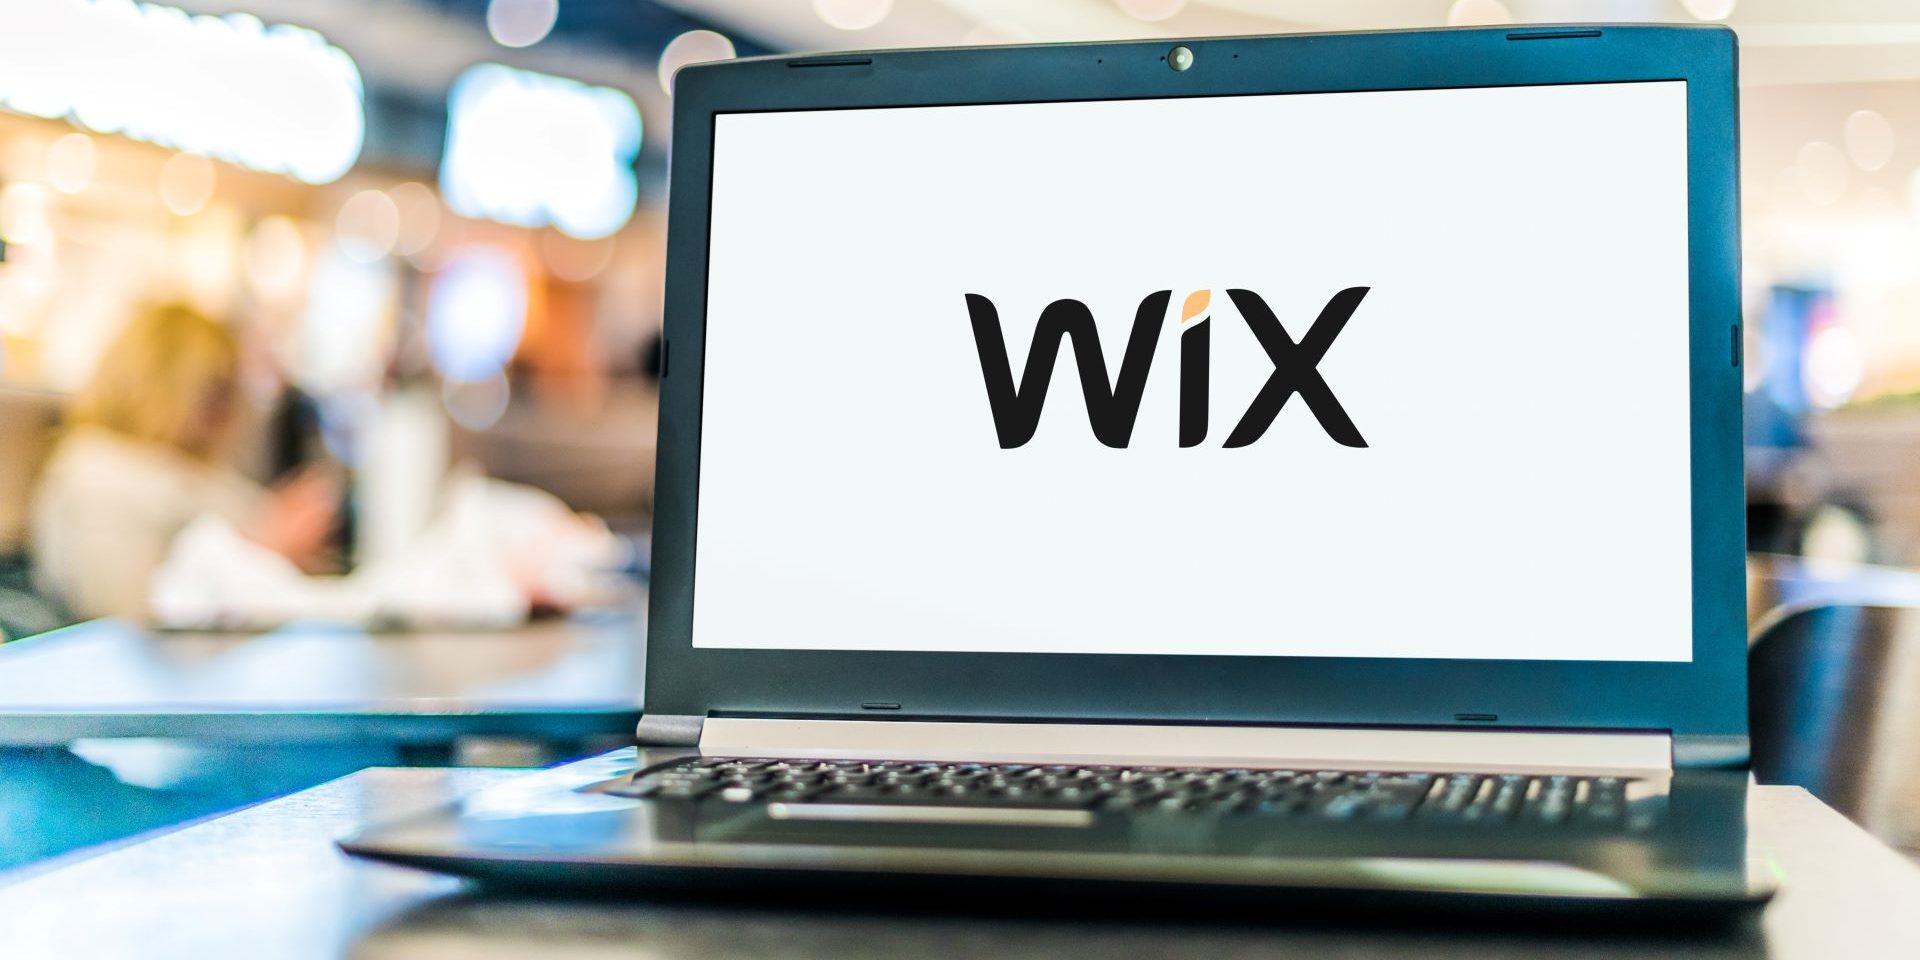 Wix logo on a laptop